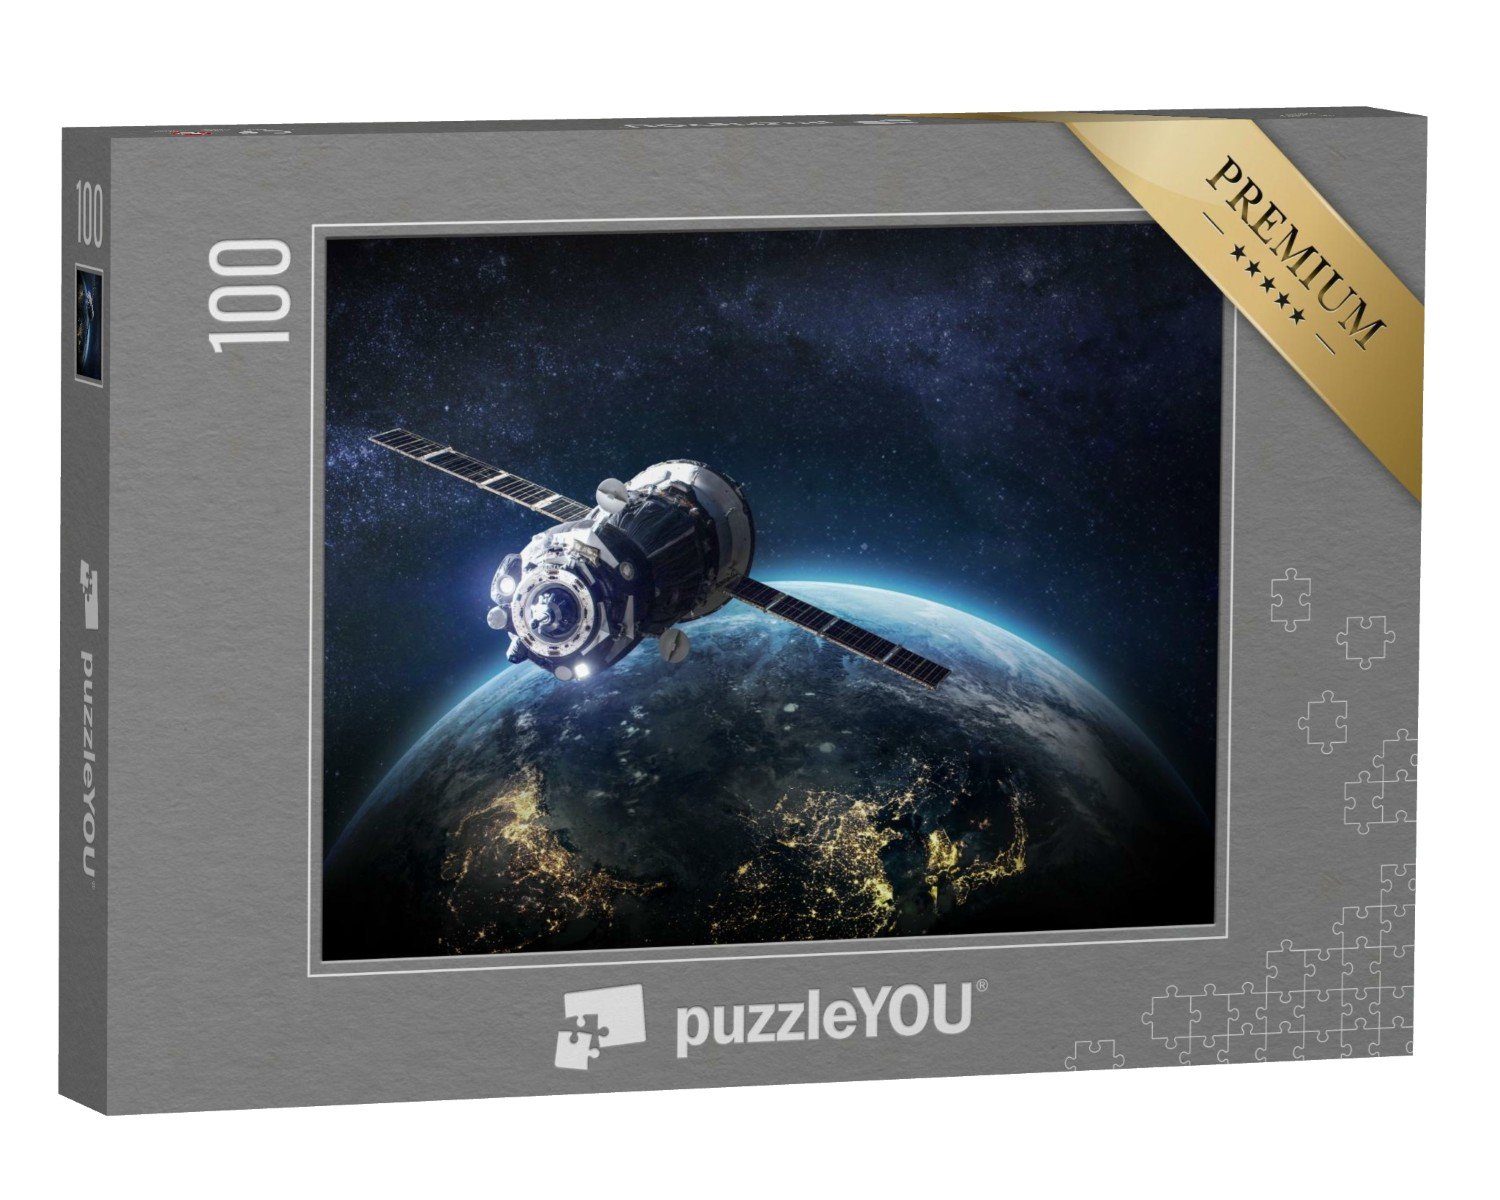 puzzleYOU Puzzle Weltallszenerie: Raumschiff und Sonnensystem, 100 Puzzleteile, puzzleYOU-Kollektionen Weltraum, Universum